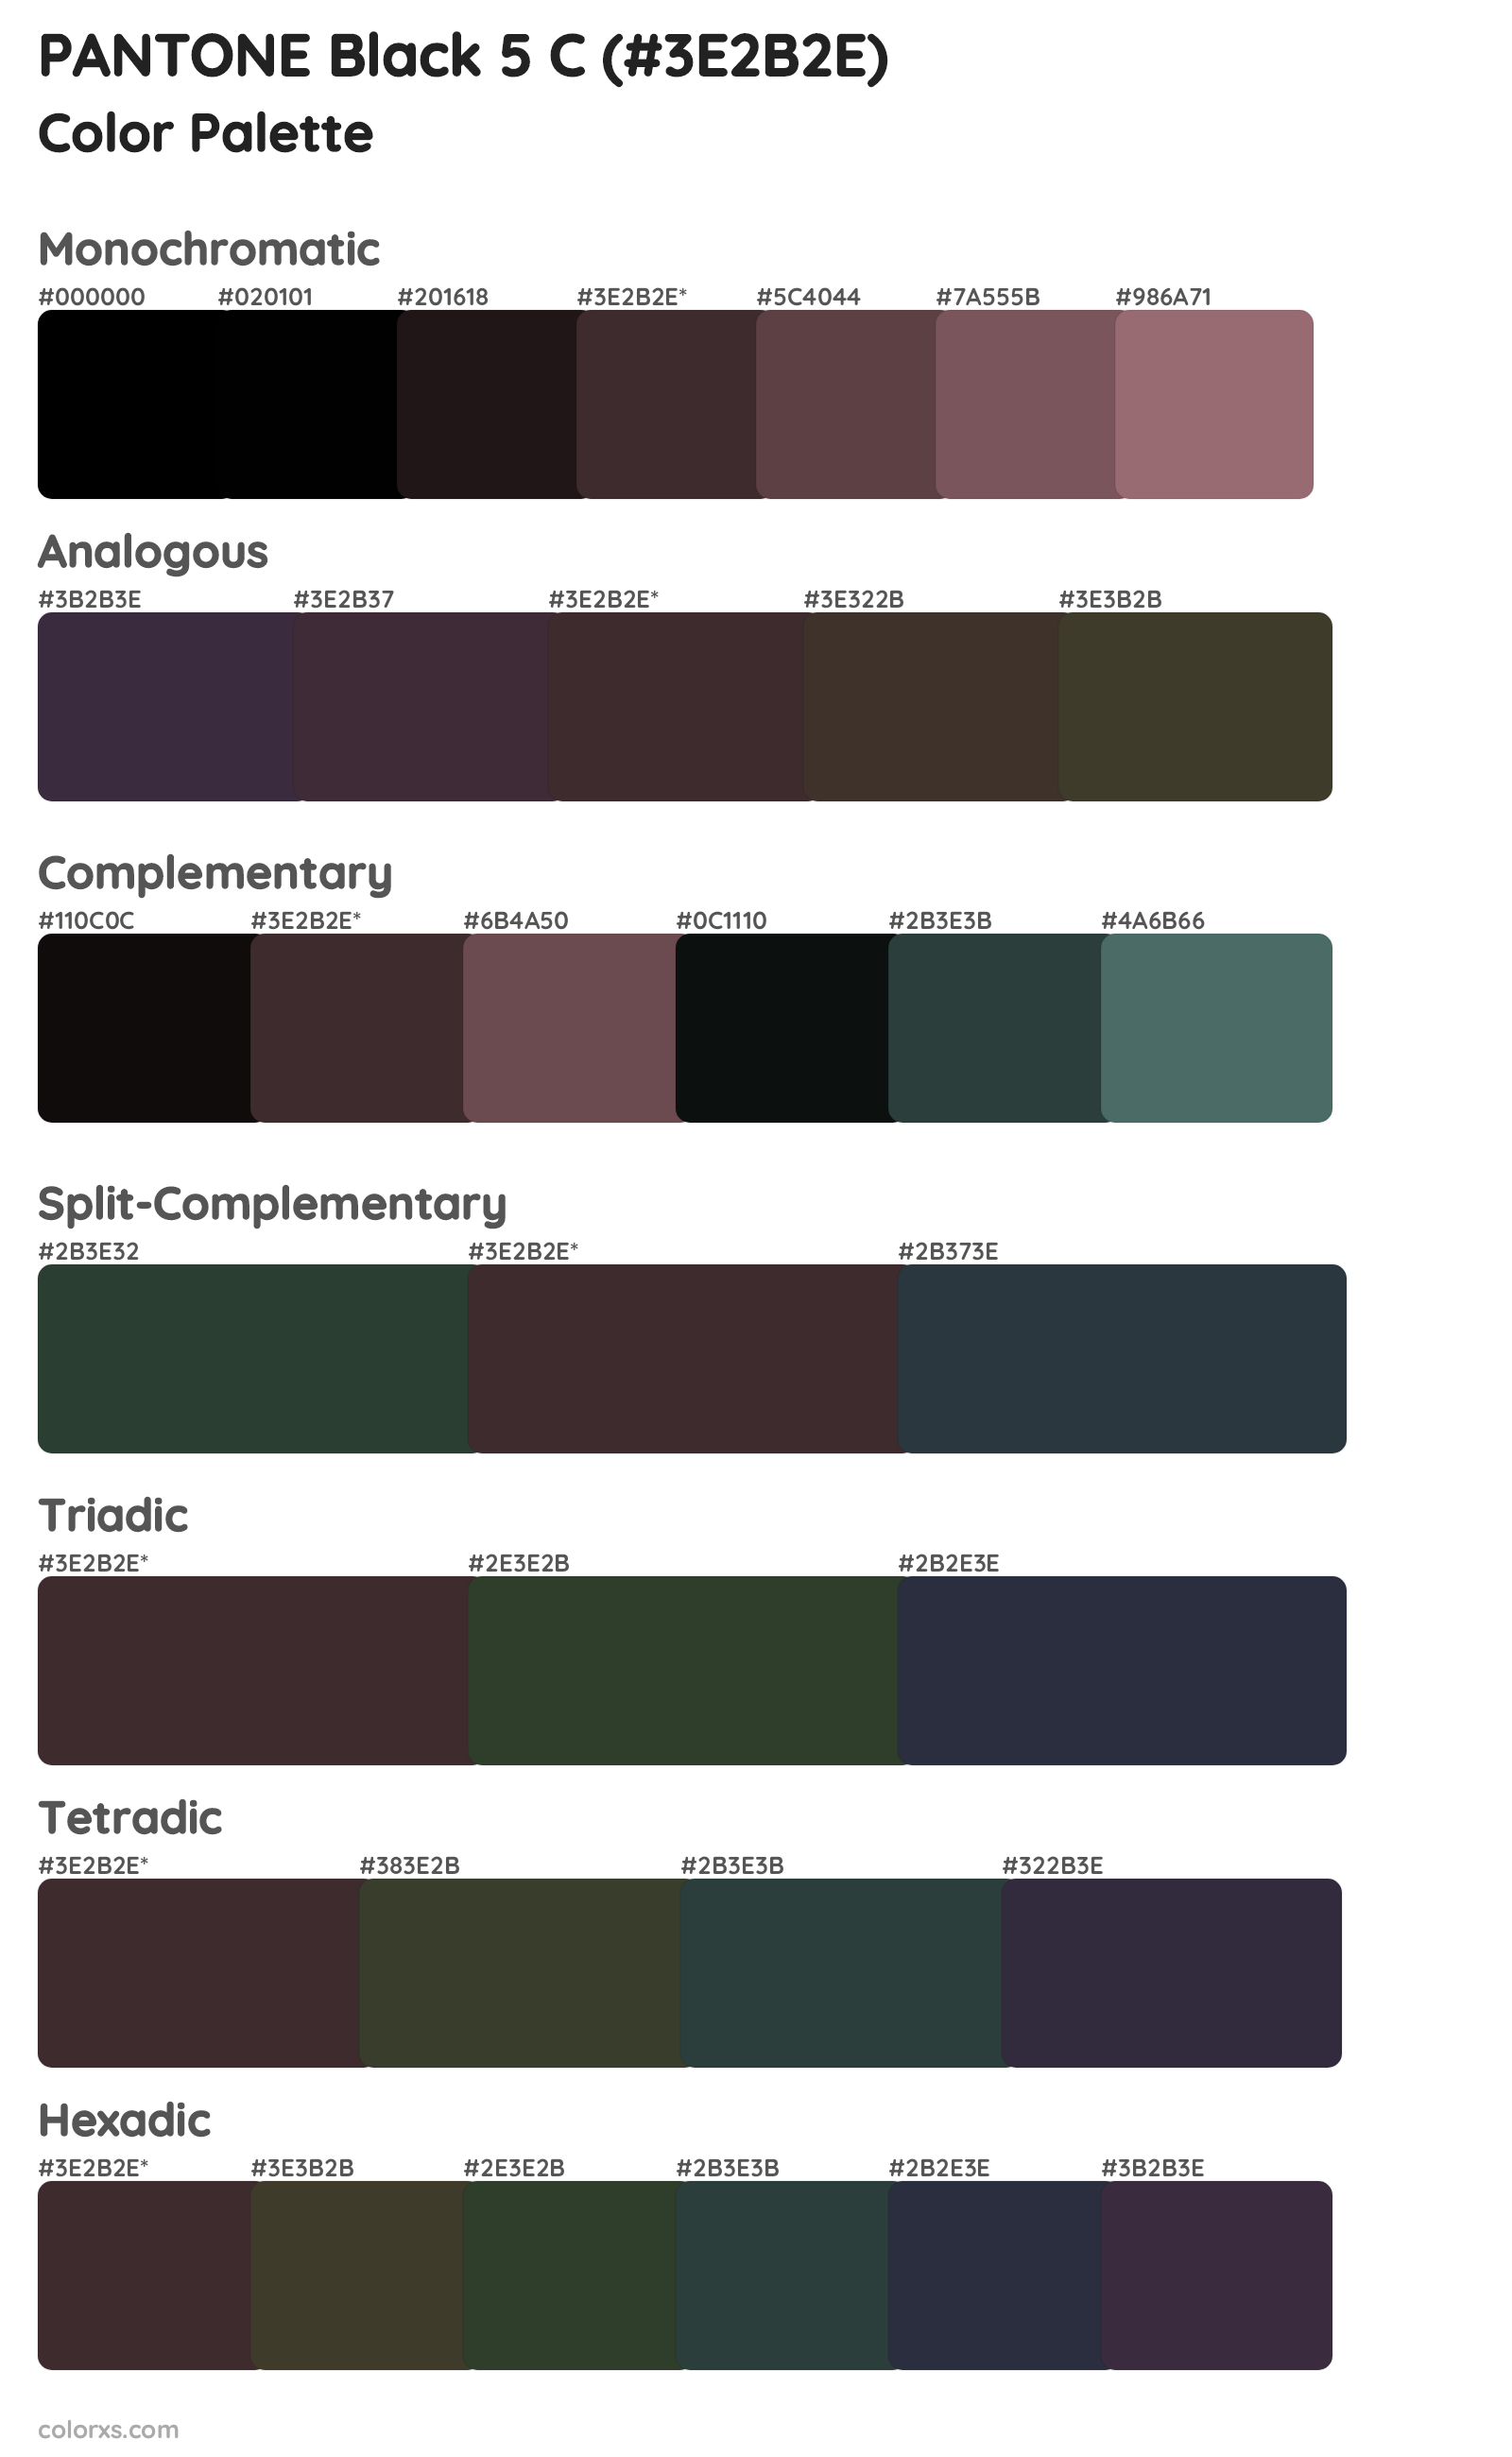 PANTONE Black 5 C Color Scheme Palettes